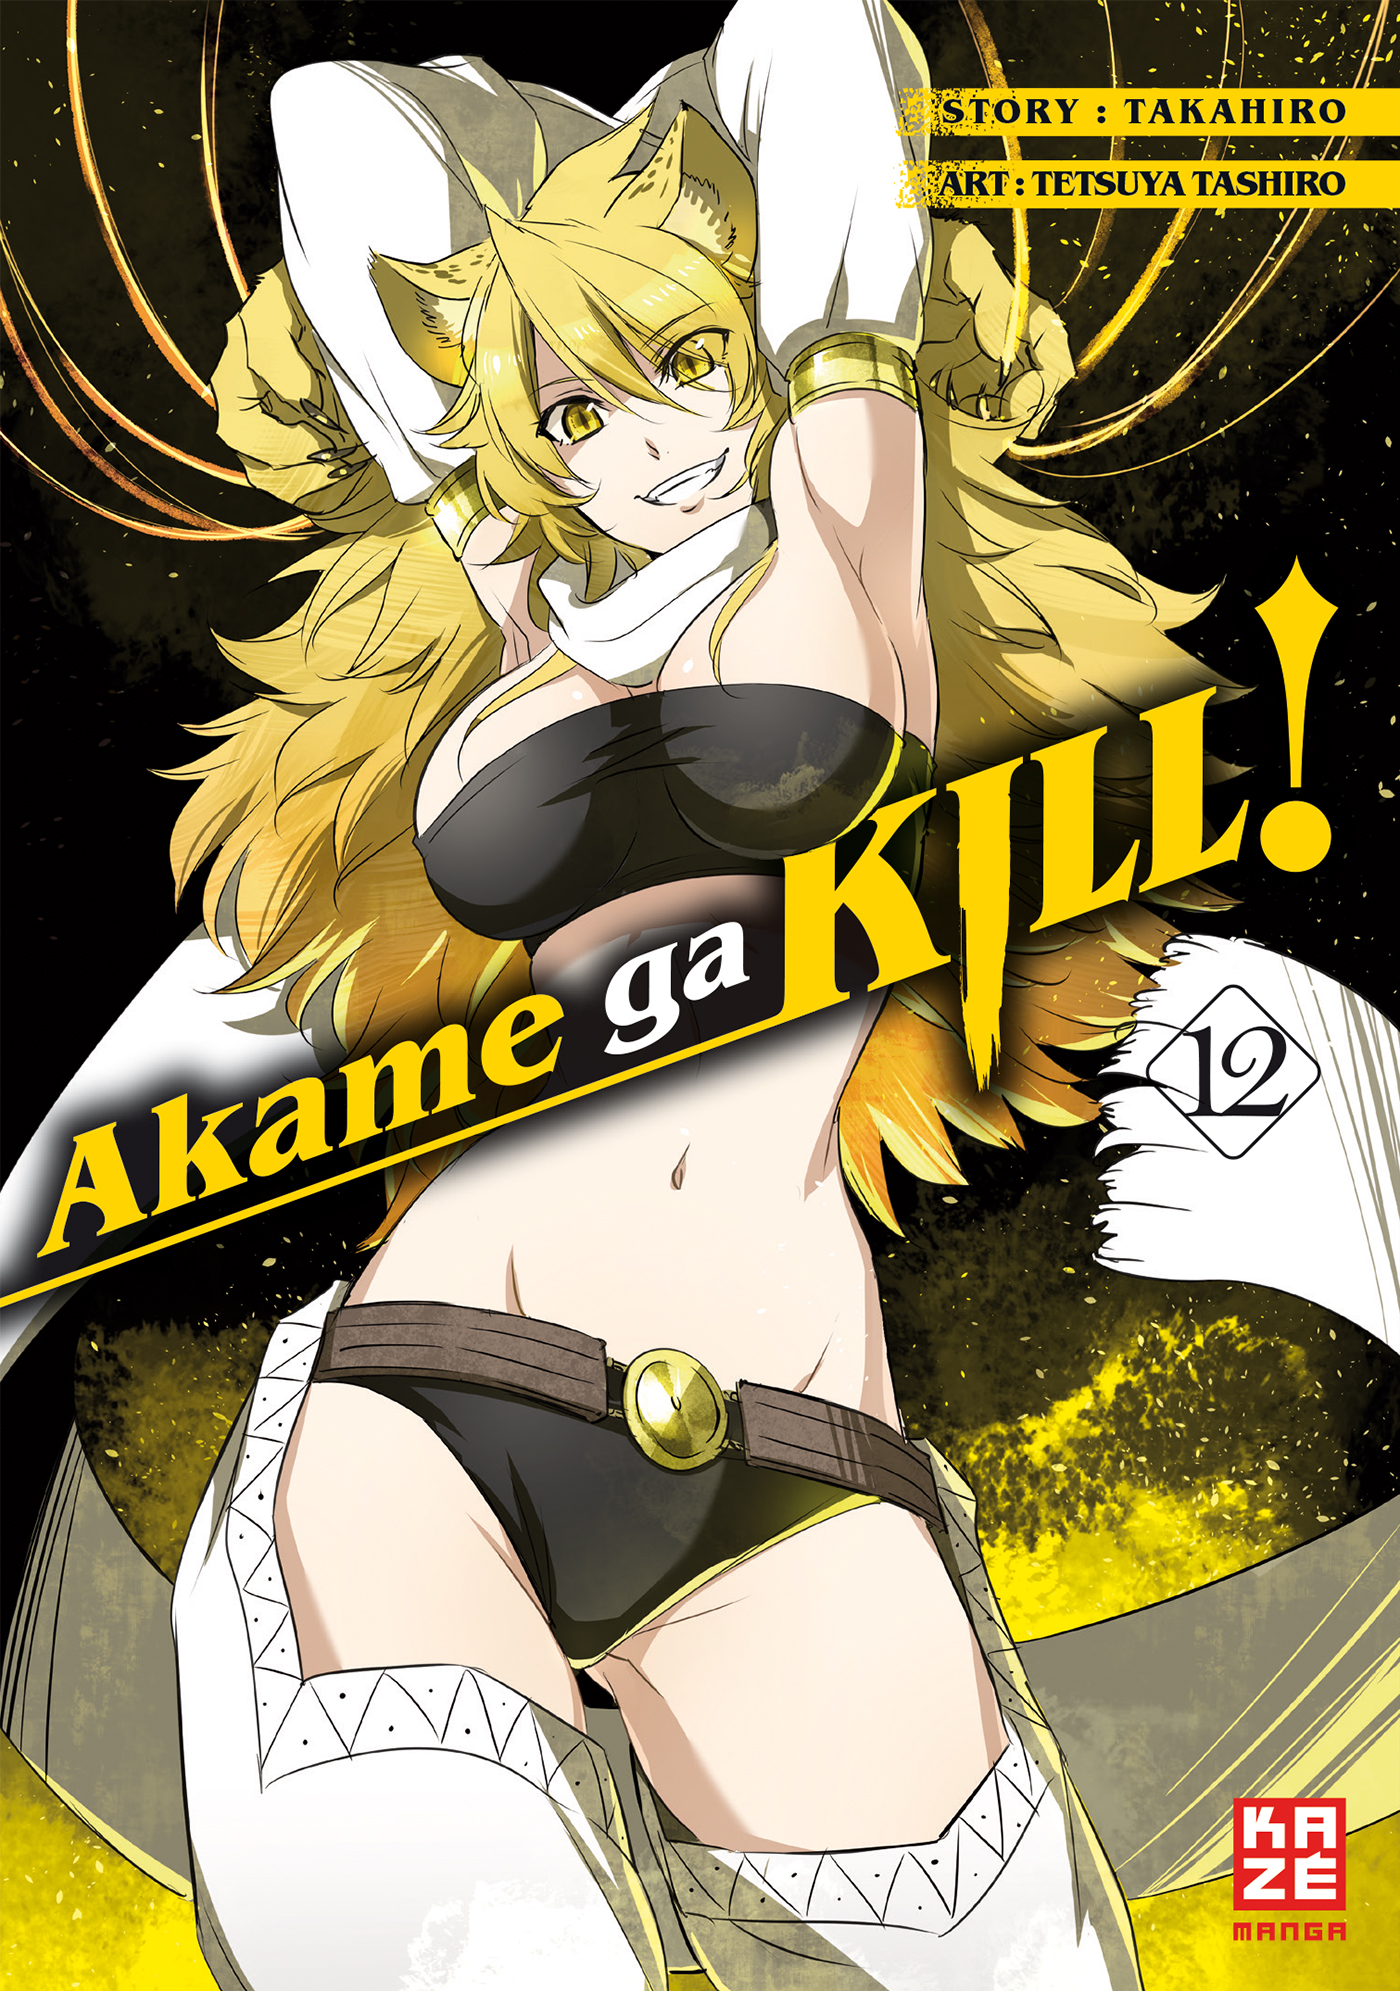 Akame ga Band 12 KILL! 